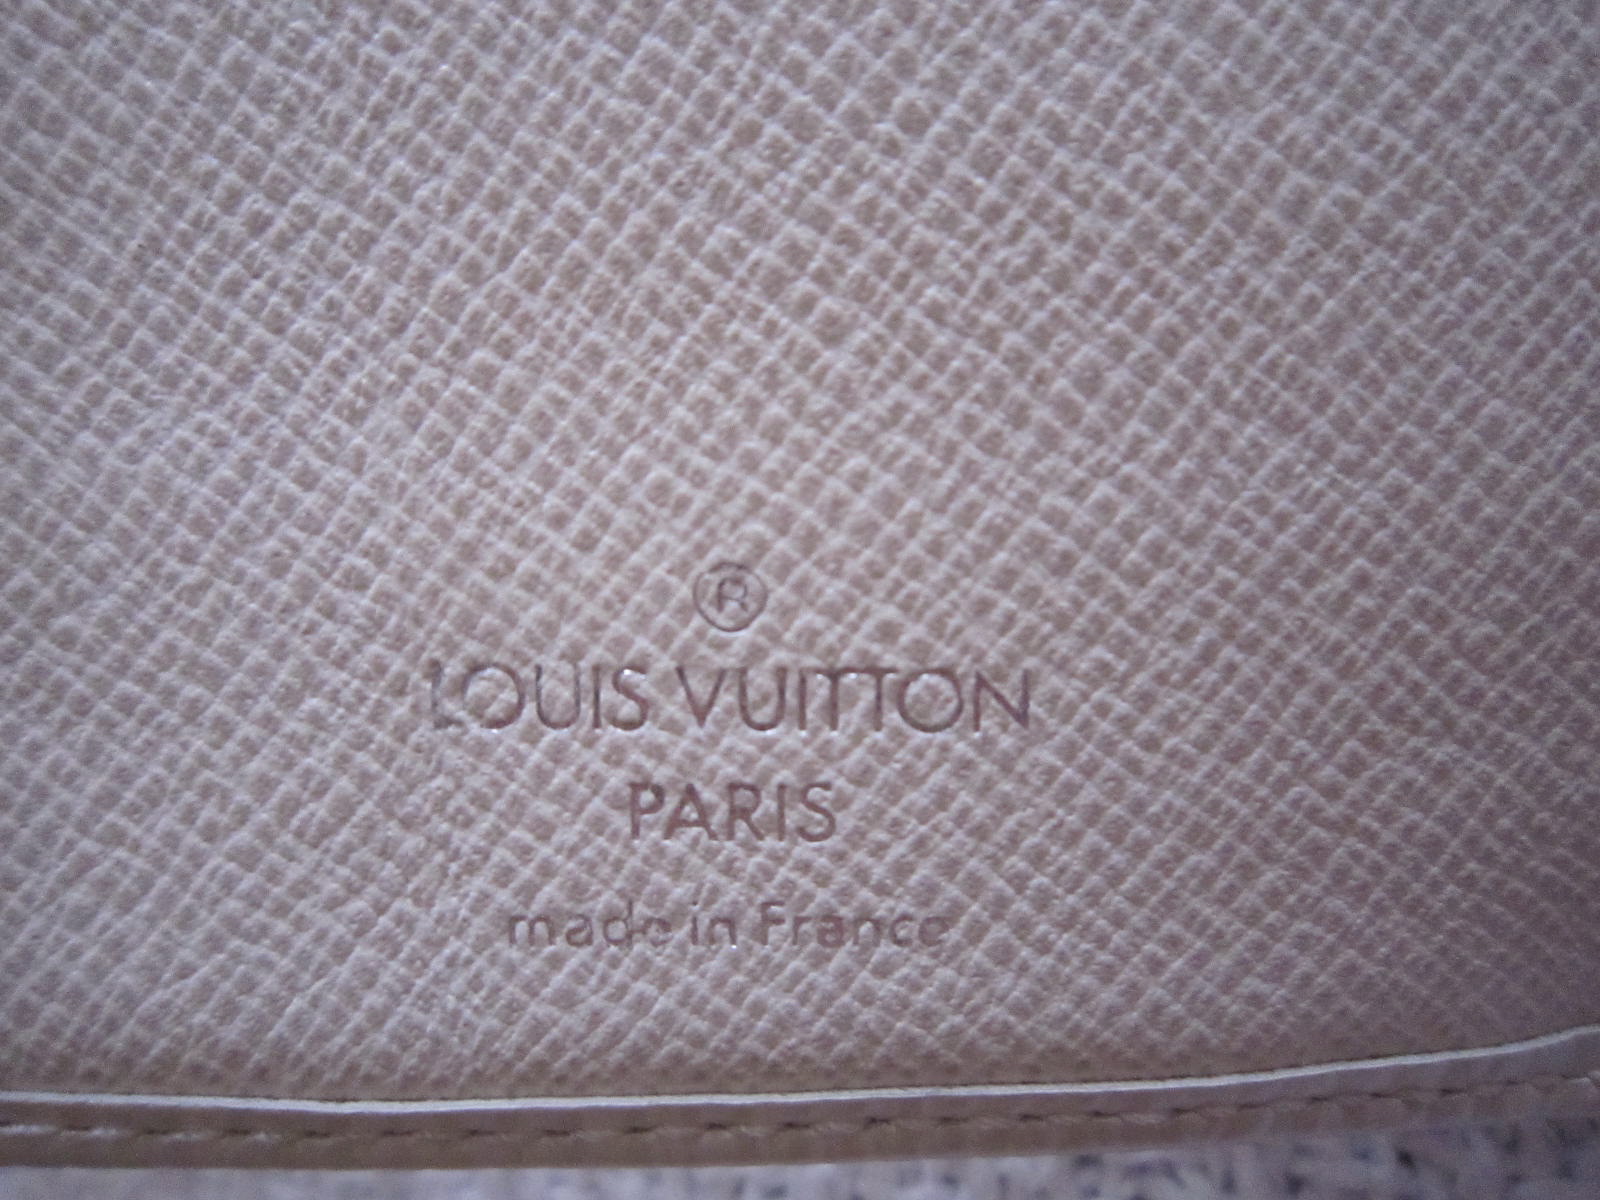 Louis Vuitton Red Epi Leather Koala Wallet